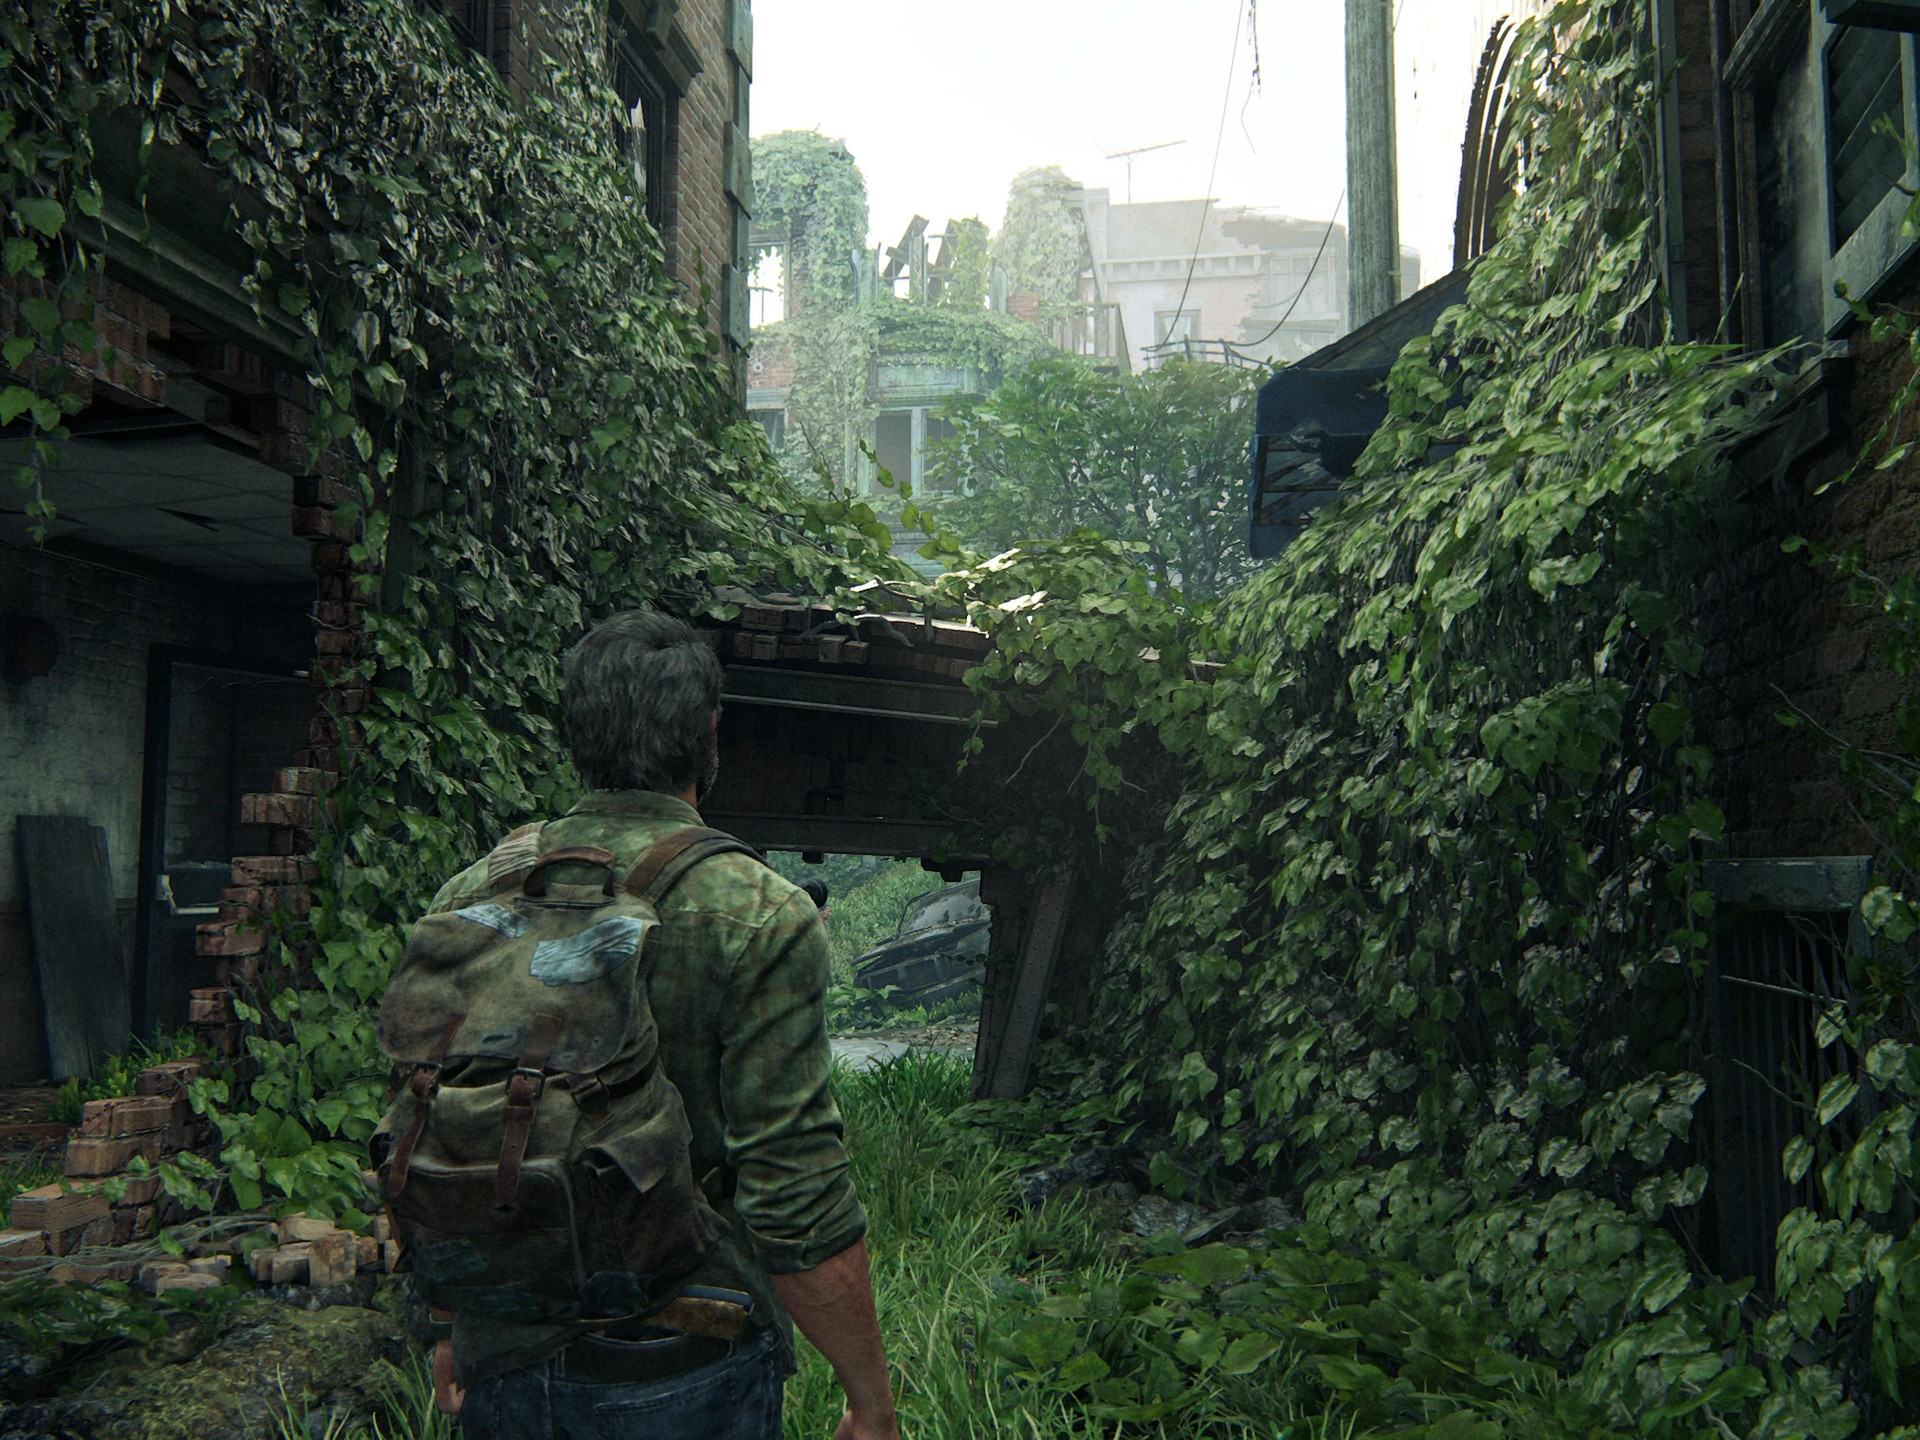 The Last of Us Parte 1 no PC tem especificações e recursos